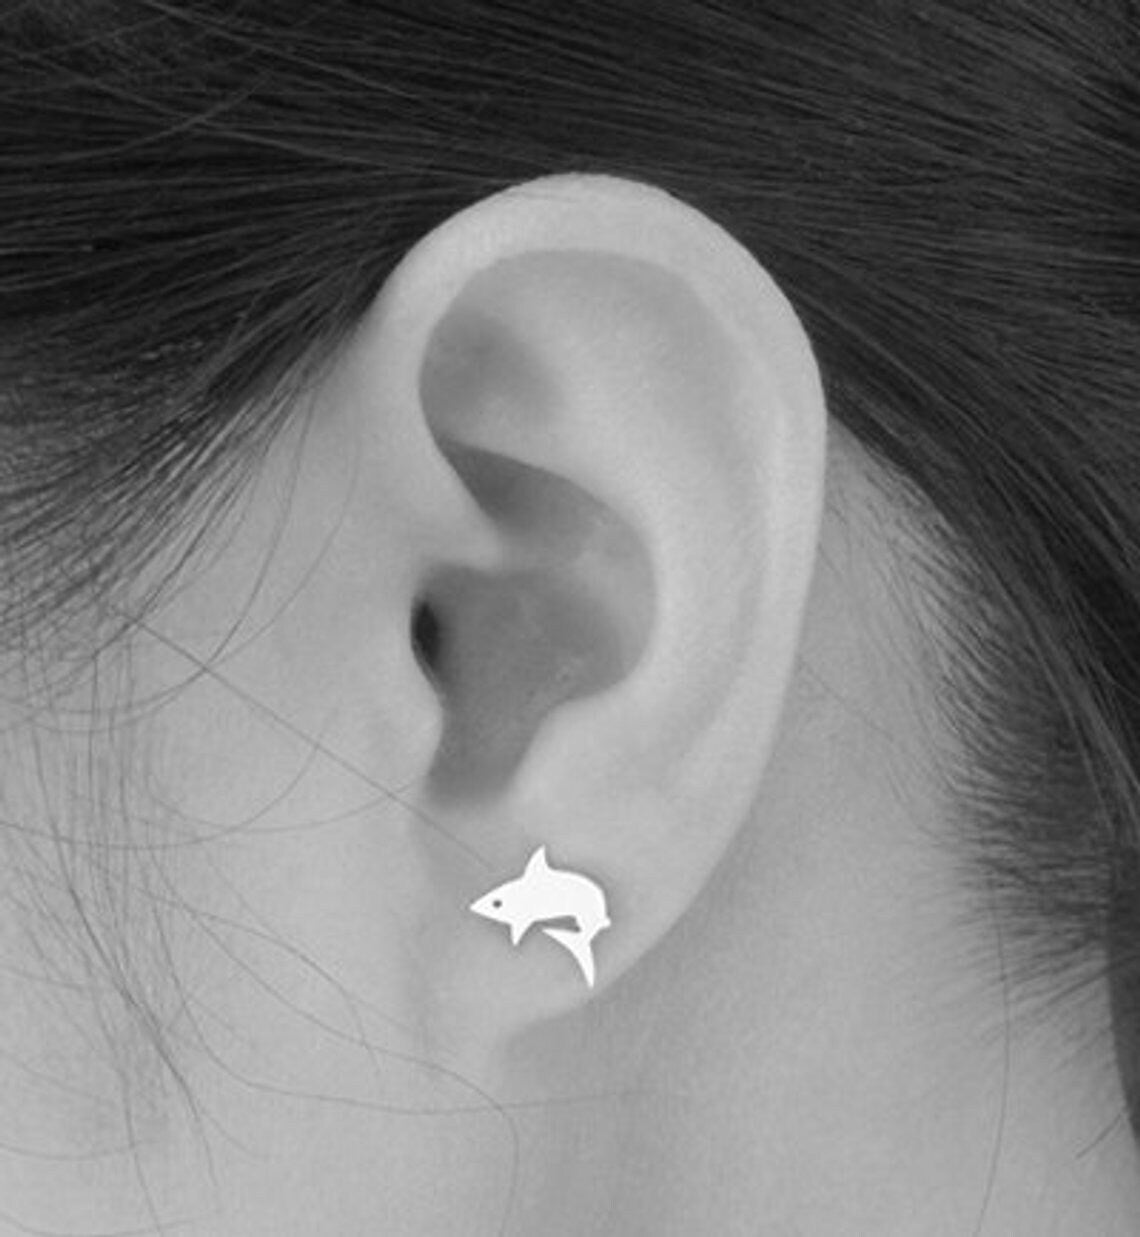 Shark Stud Earrings in Sterling Silver, Silver Shark Ear Posts, Animal Stud Earrings